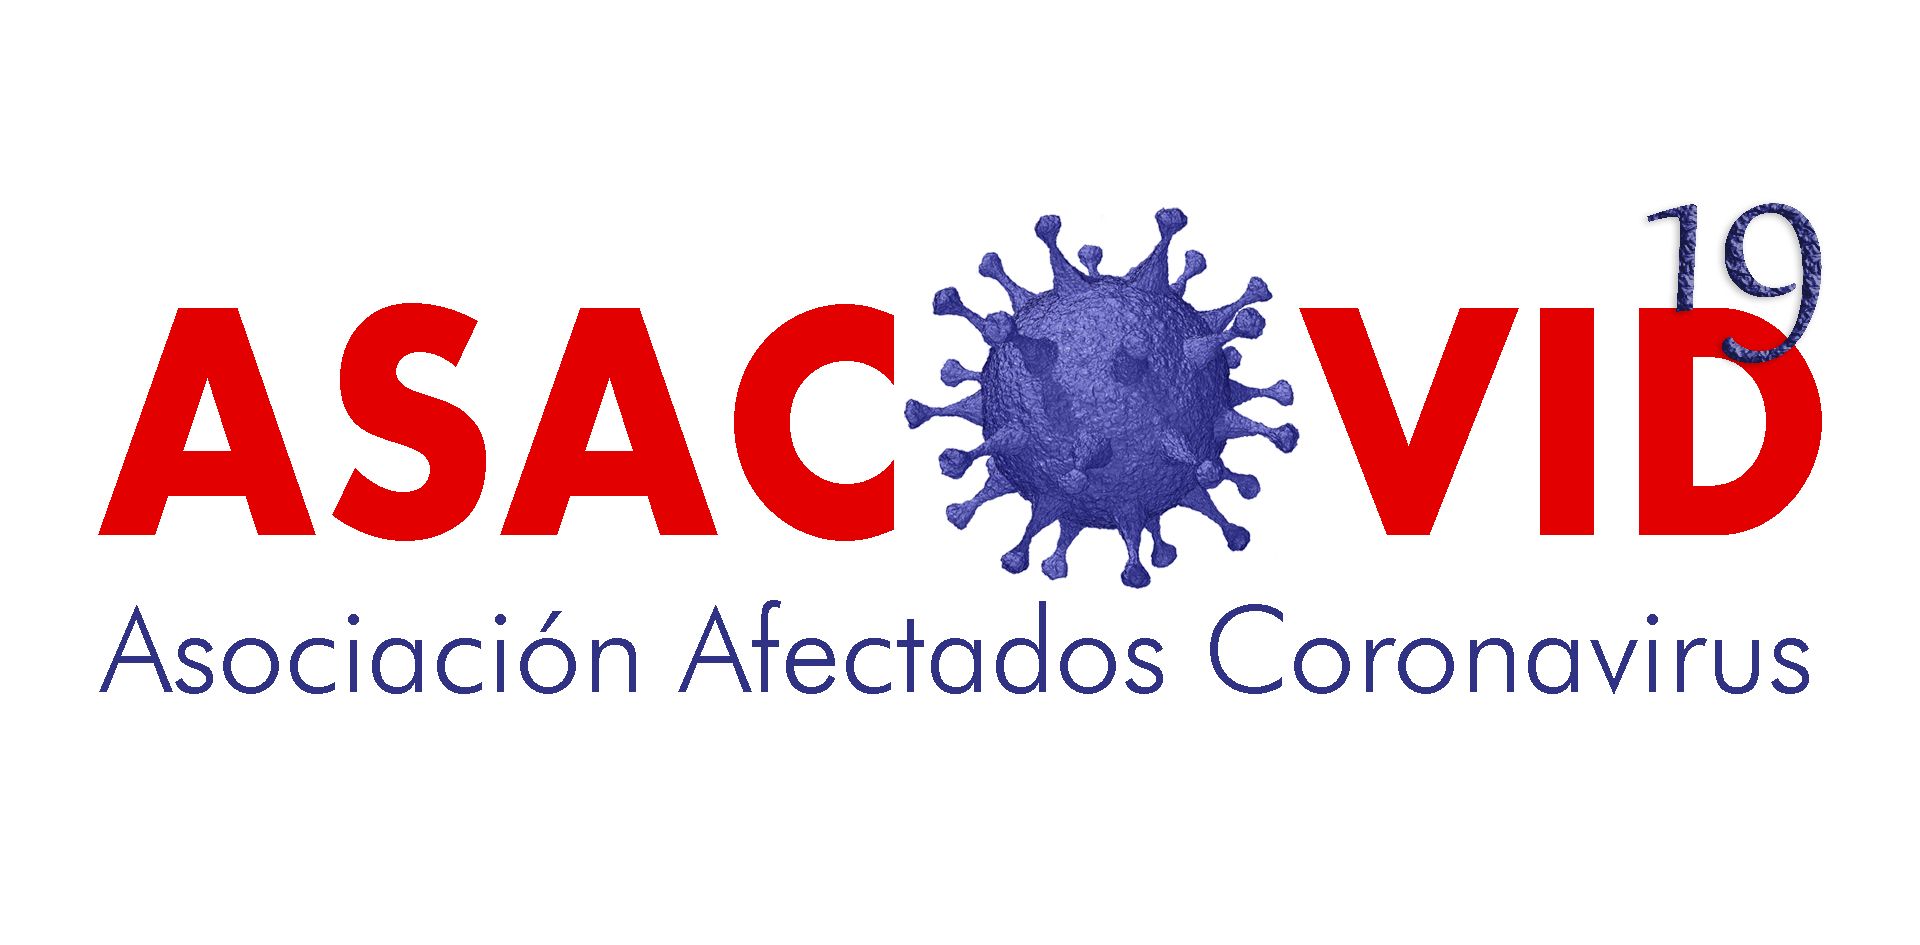 ASACOVID, Asociación de Afectados por el Coronavirus nace con el fin de defender a las víctimas del COVID-19